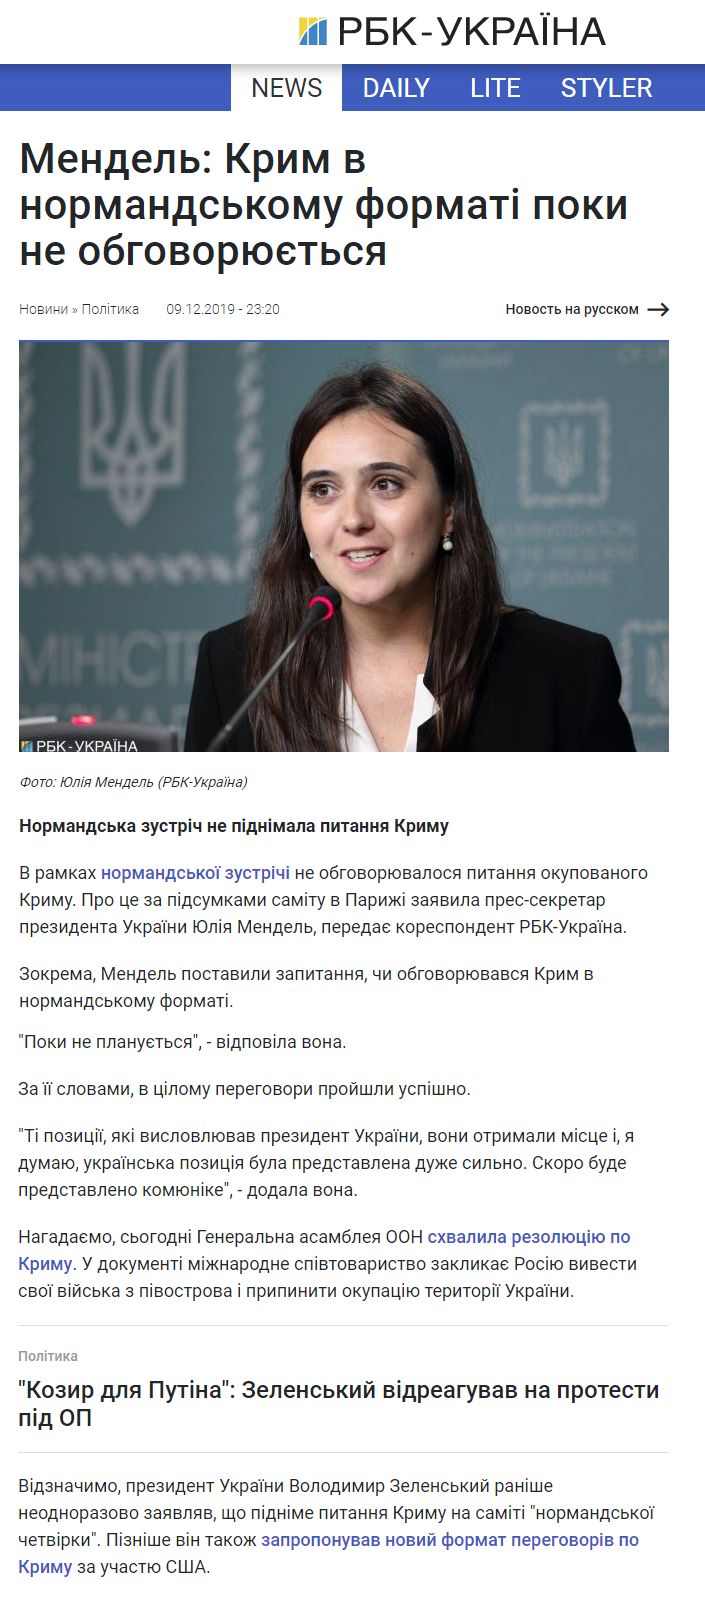 https://www.rbc.ua/ukr/news/tramp-nedovolen-tem-smi-pisali-vizite-sammit-1575925874.html